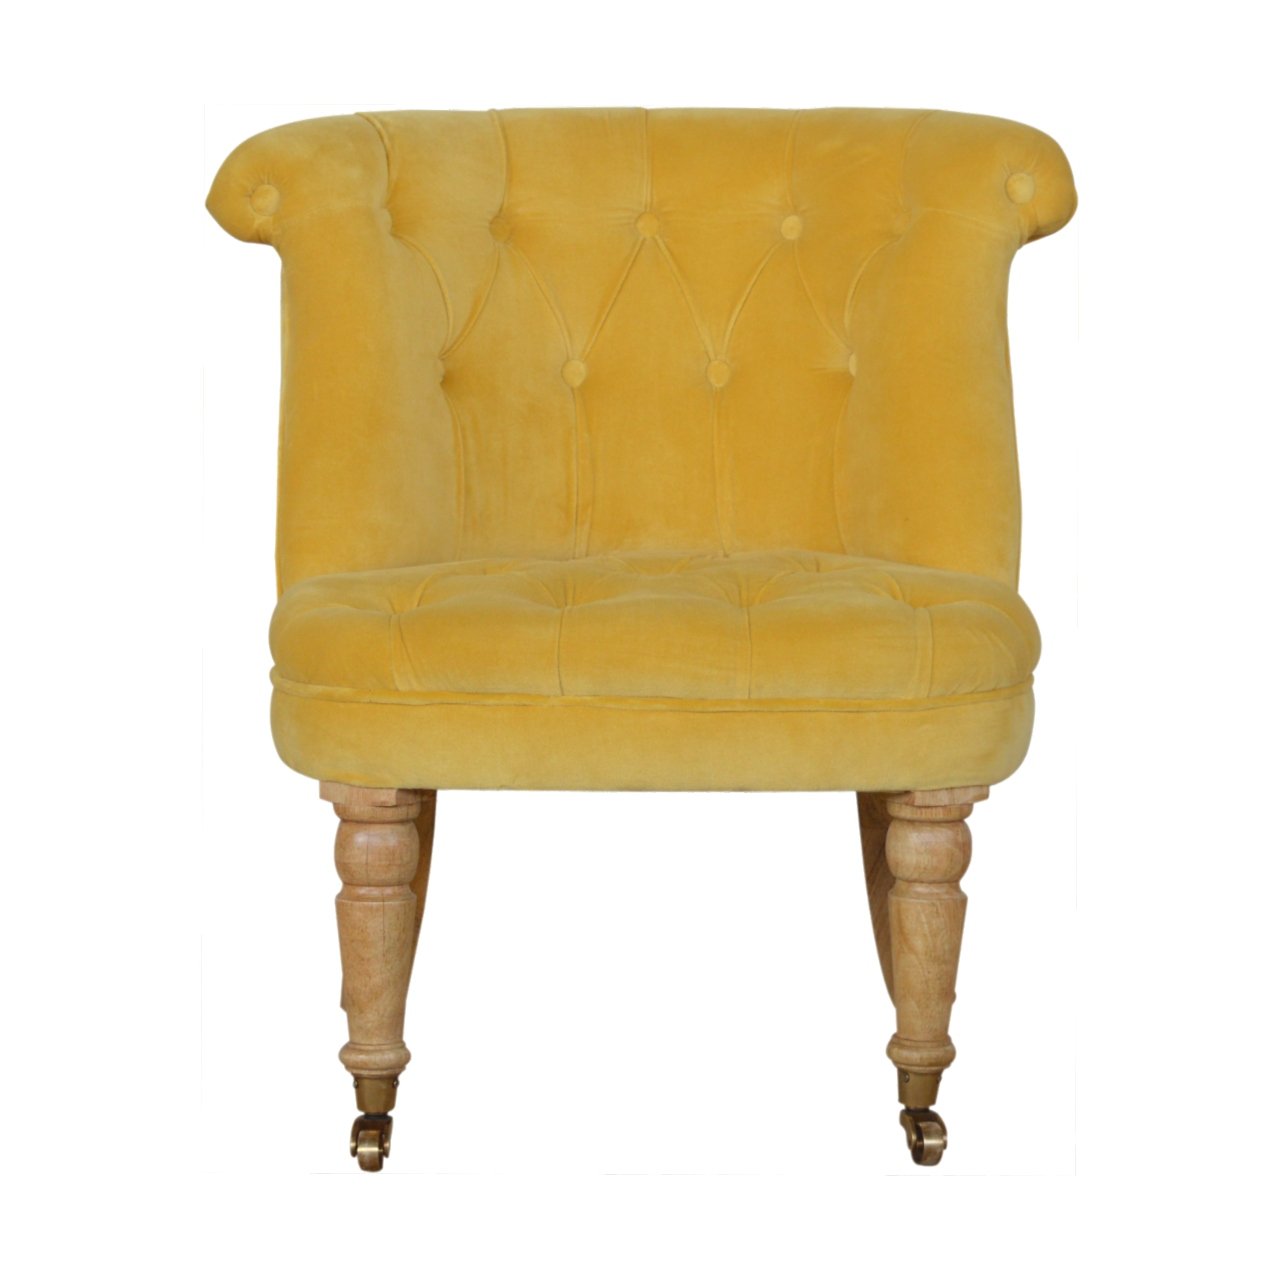 View Mustard Velvet Accent Chair information